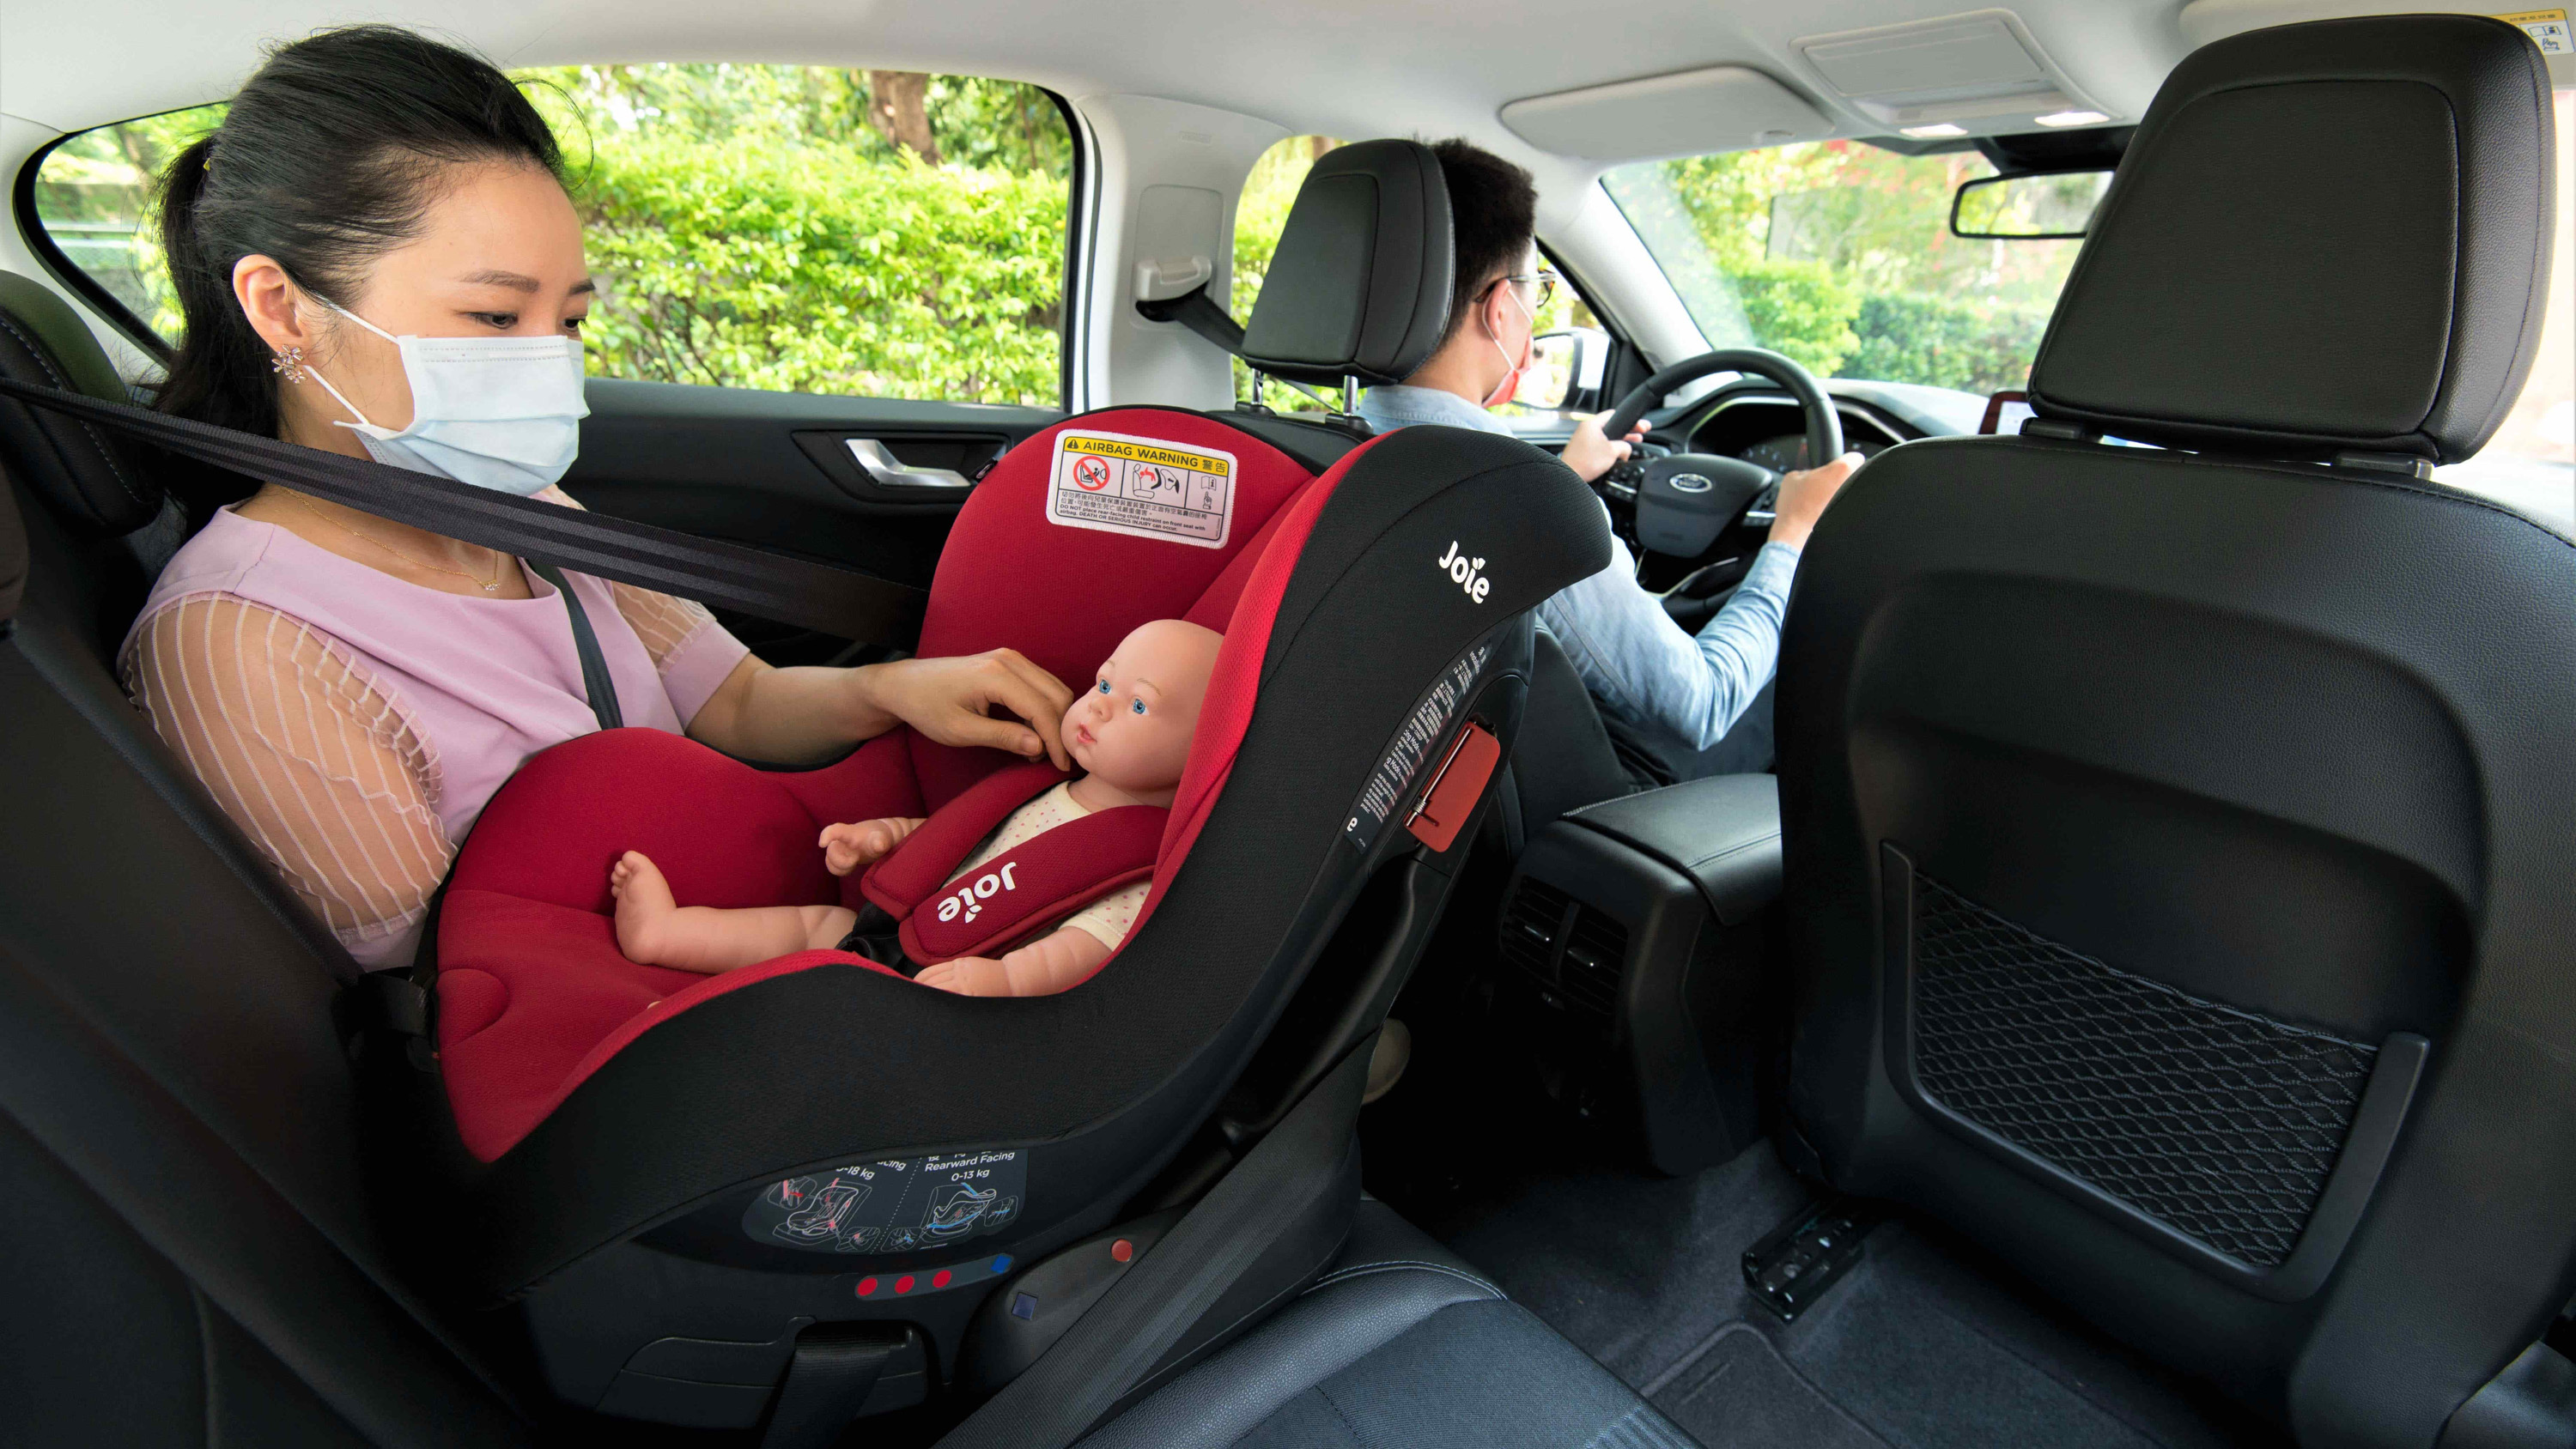 開車出門「孩」是坐好最安全　Ford 呼籲養成正確觀念確保孩童乘車安全